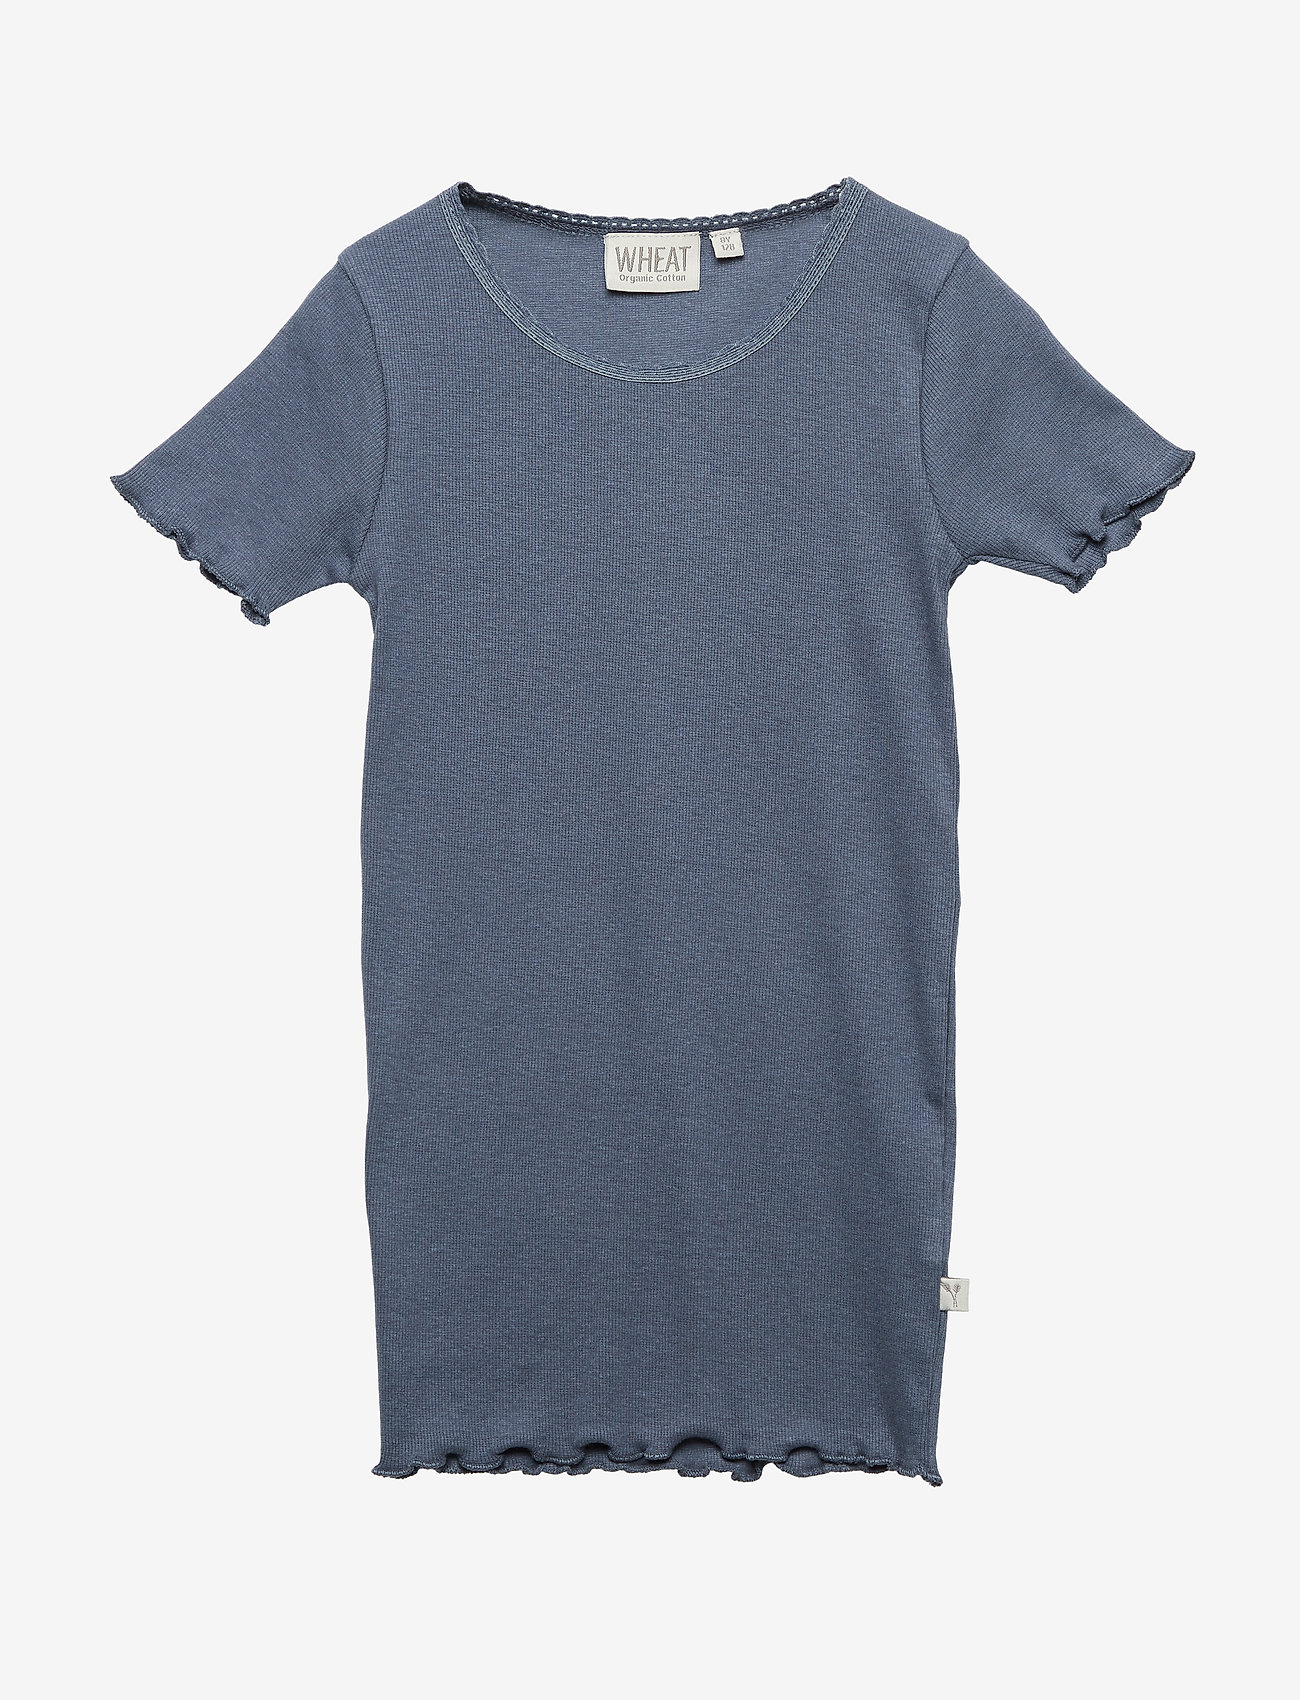 Wheat - Rib T-Shirt Lace SS - greyblue - 0